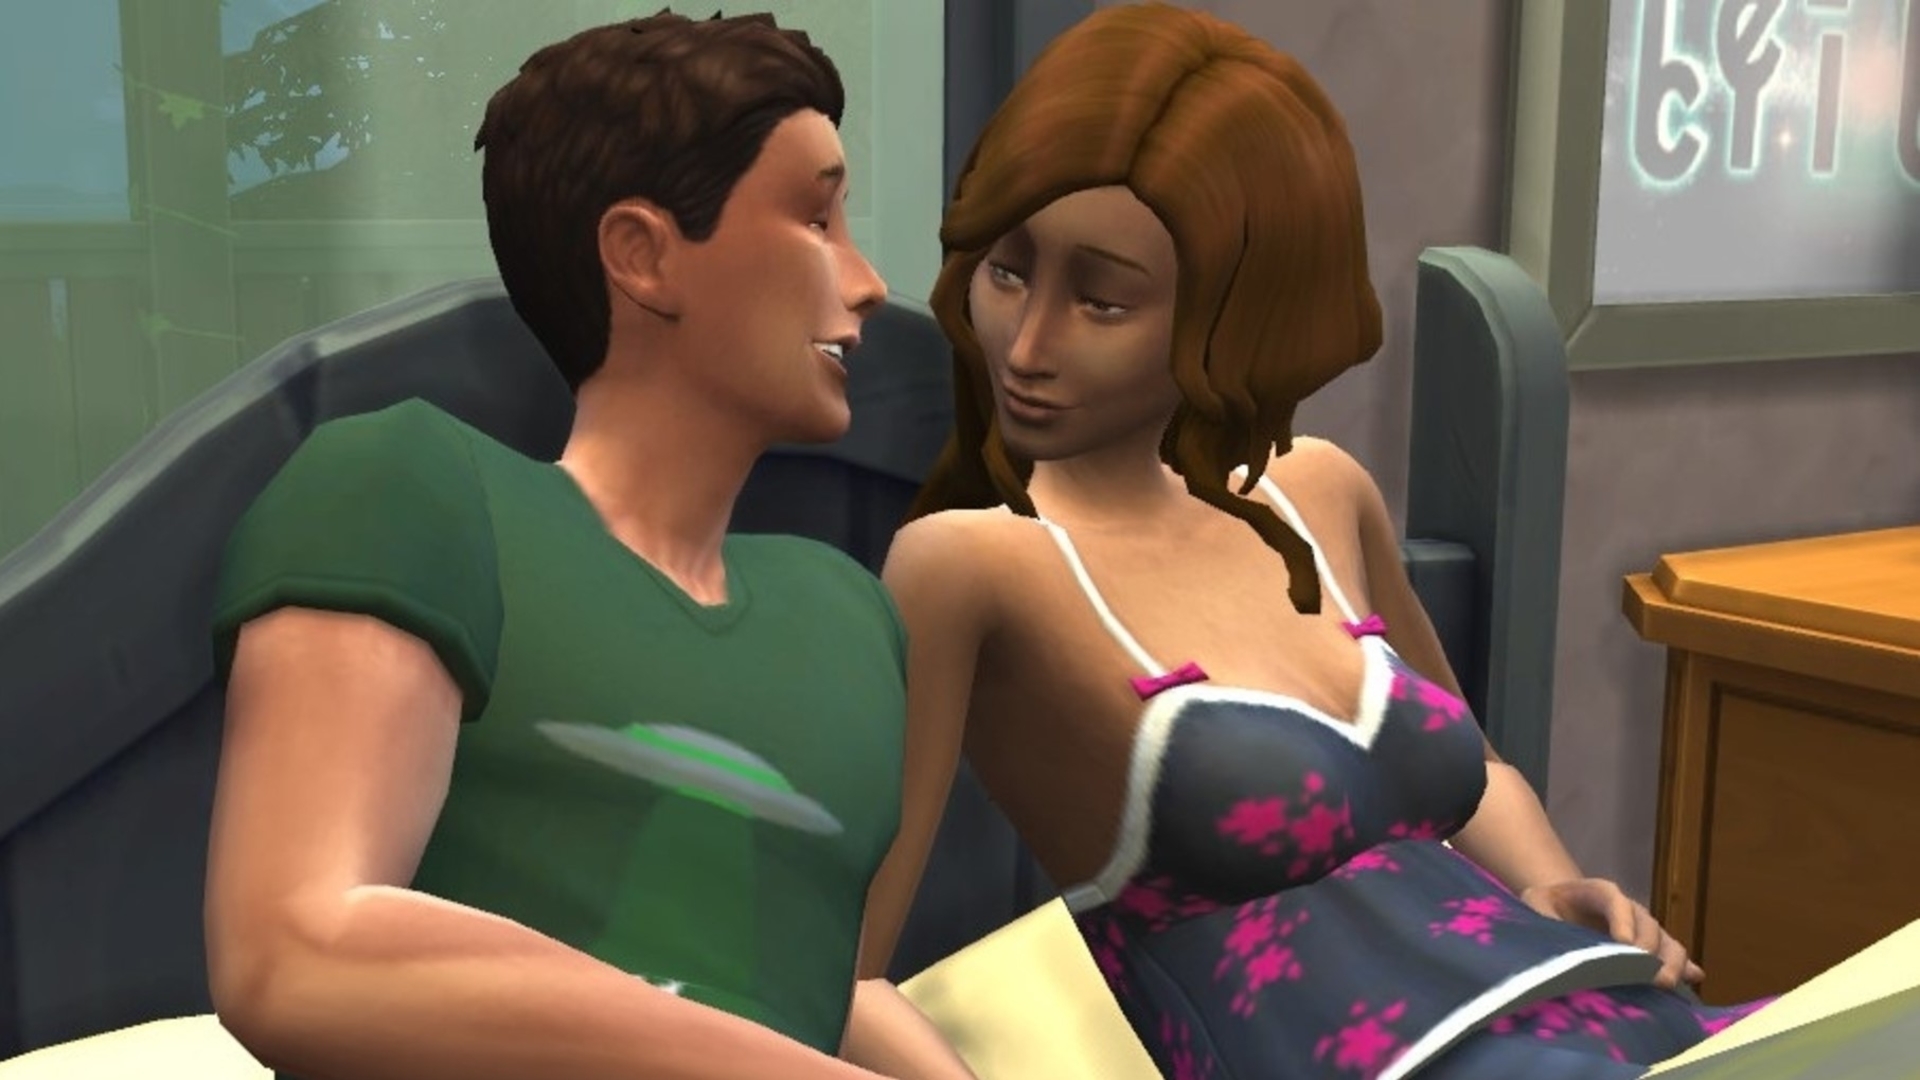 Sims4 nude mod